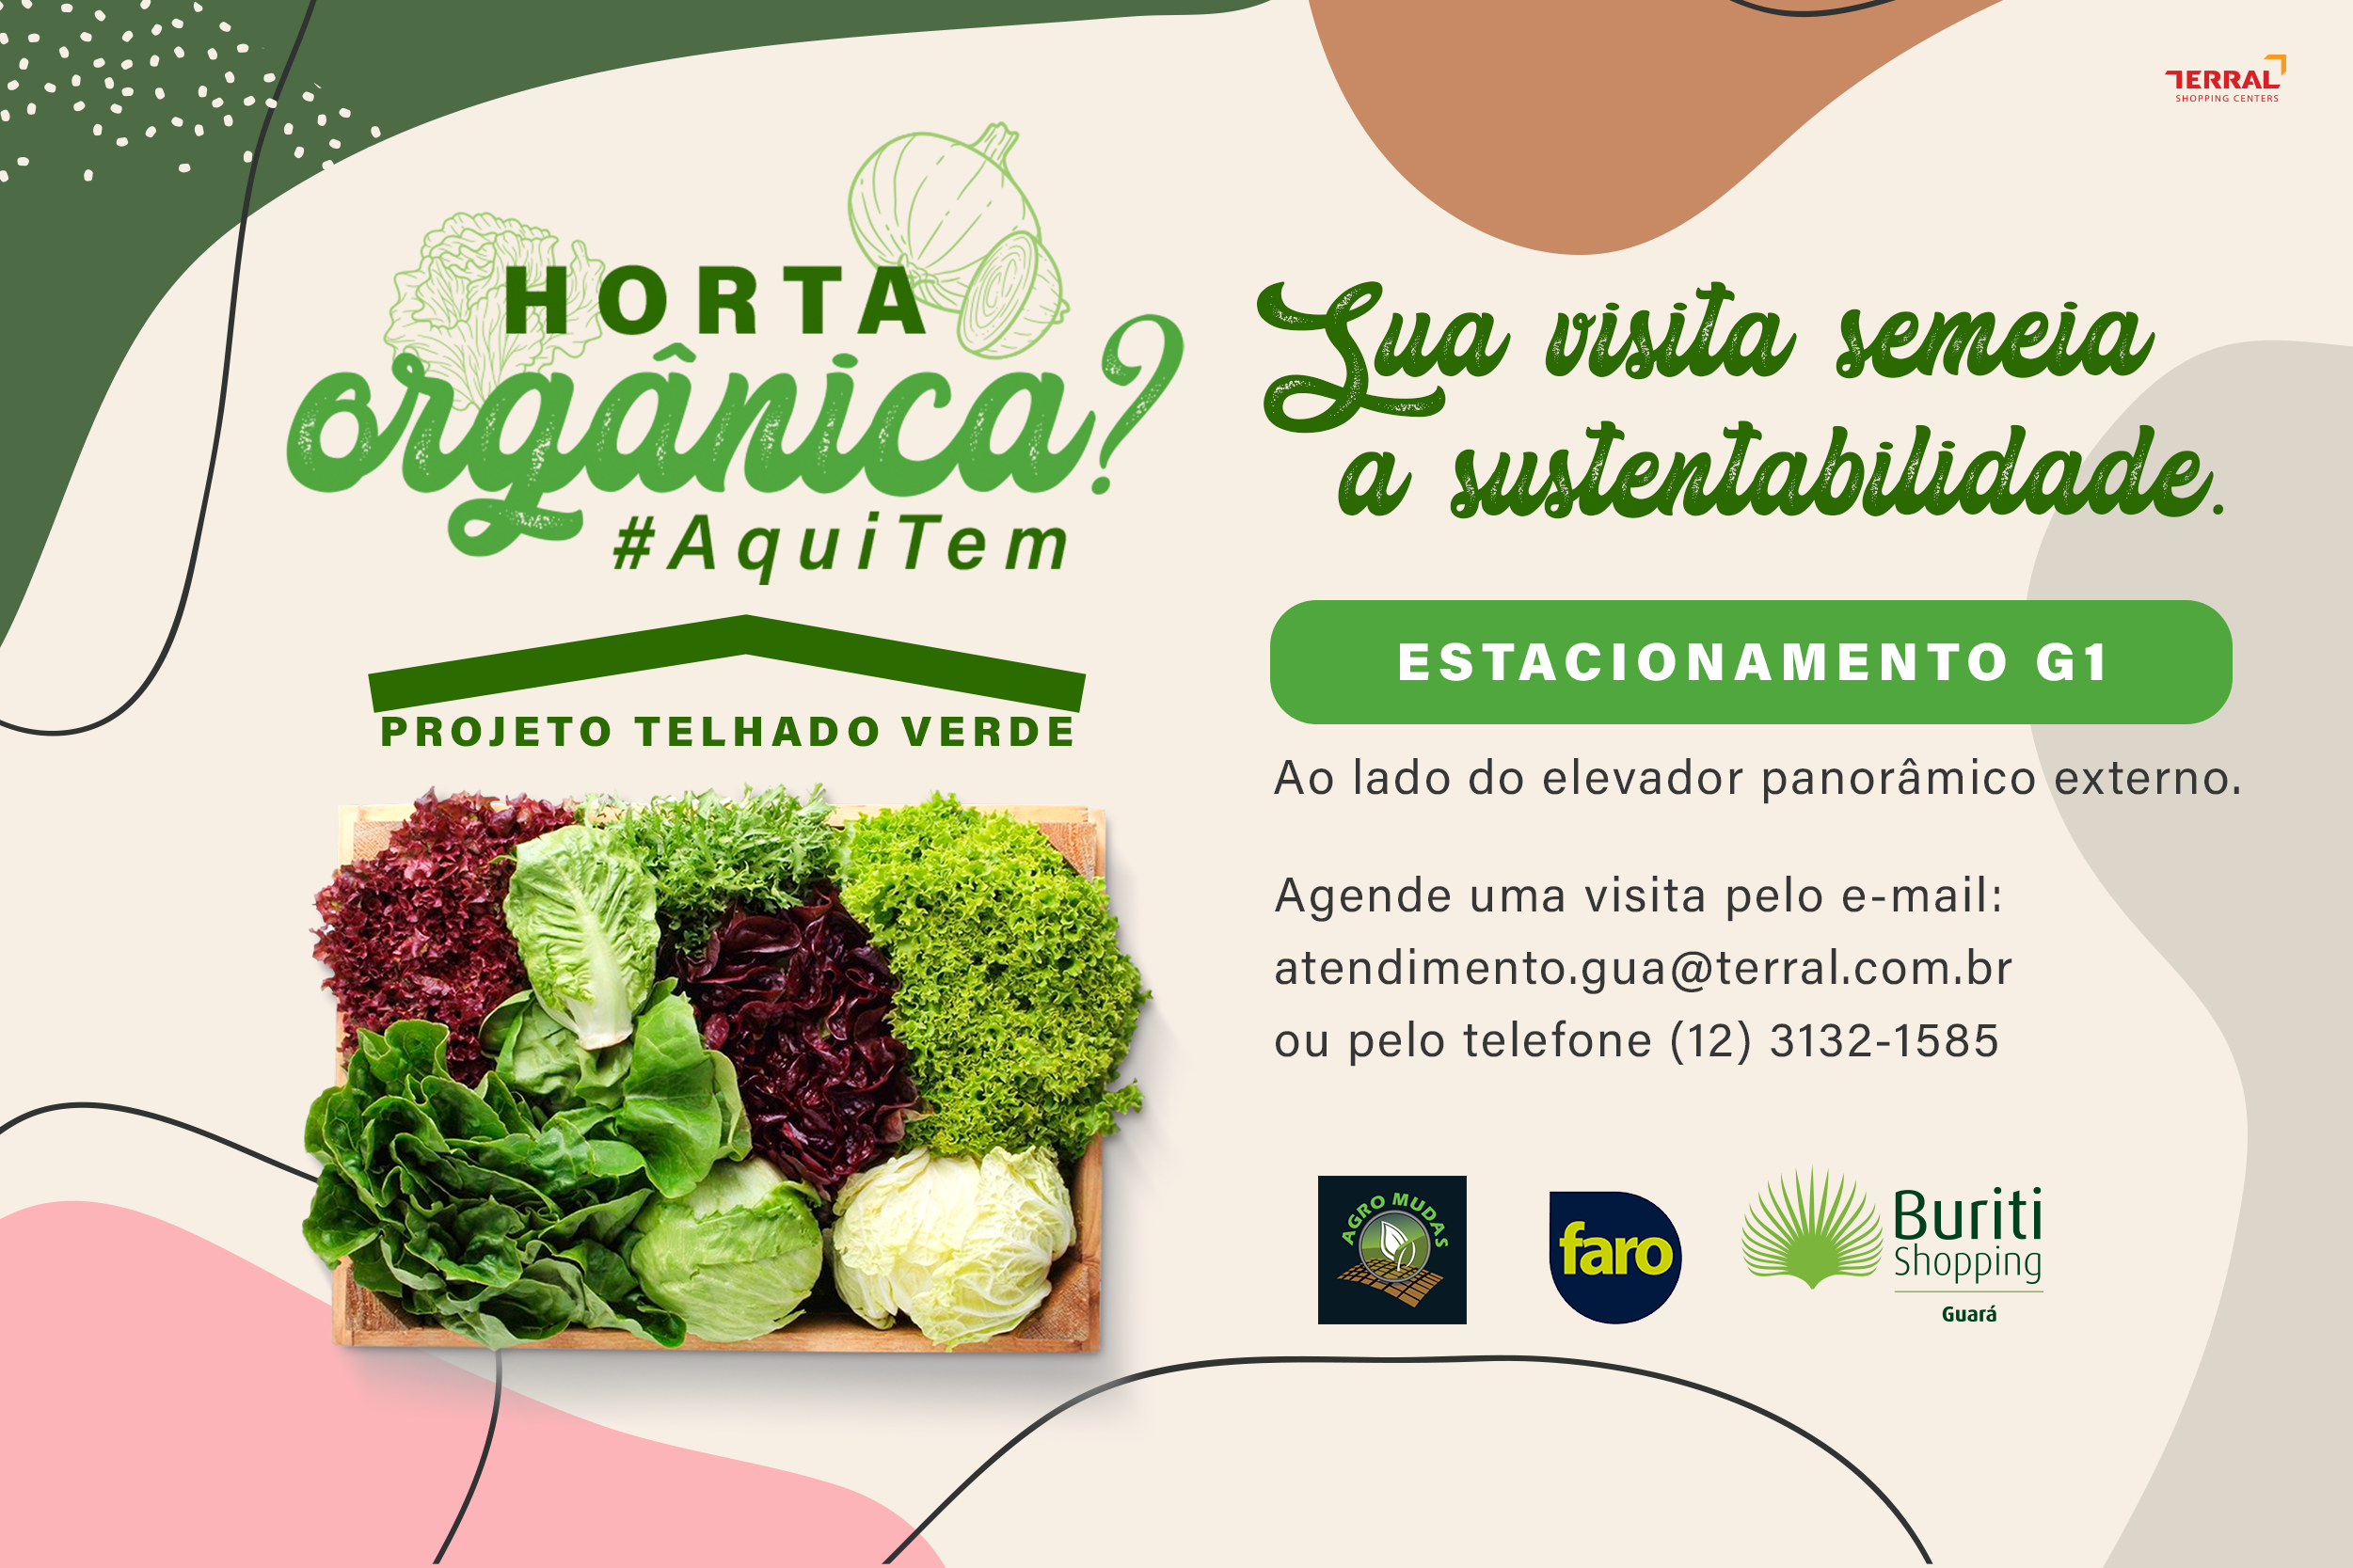 Horta orgânica no Buriti Guará!